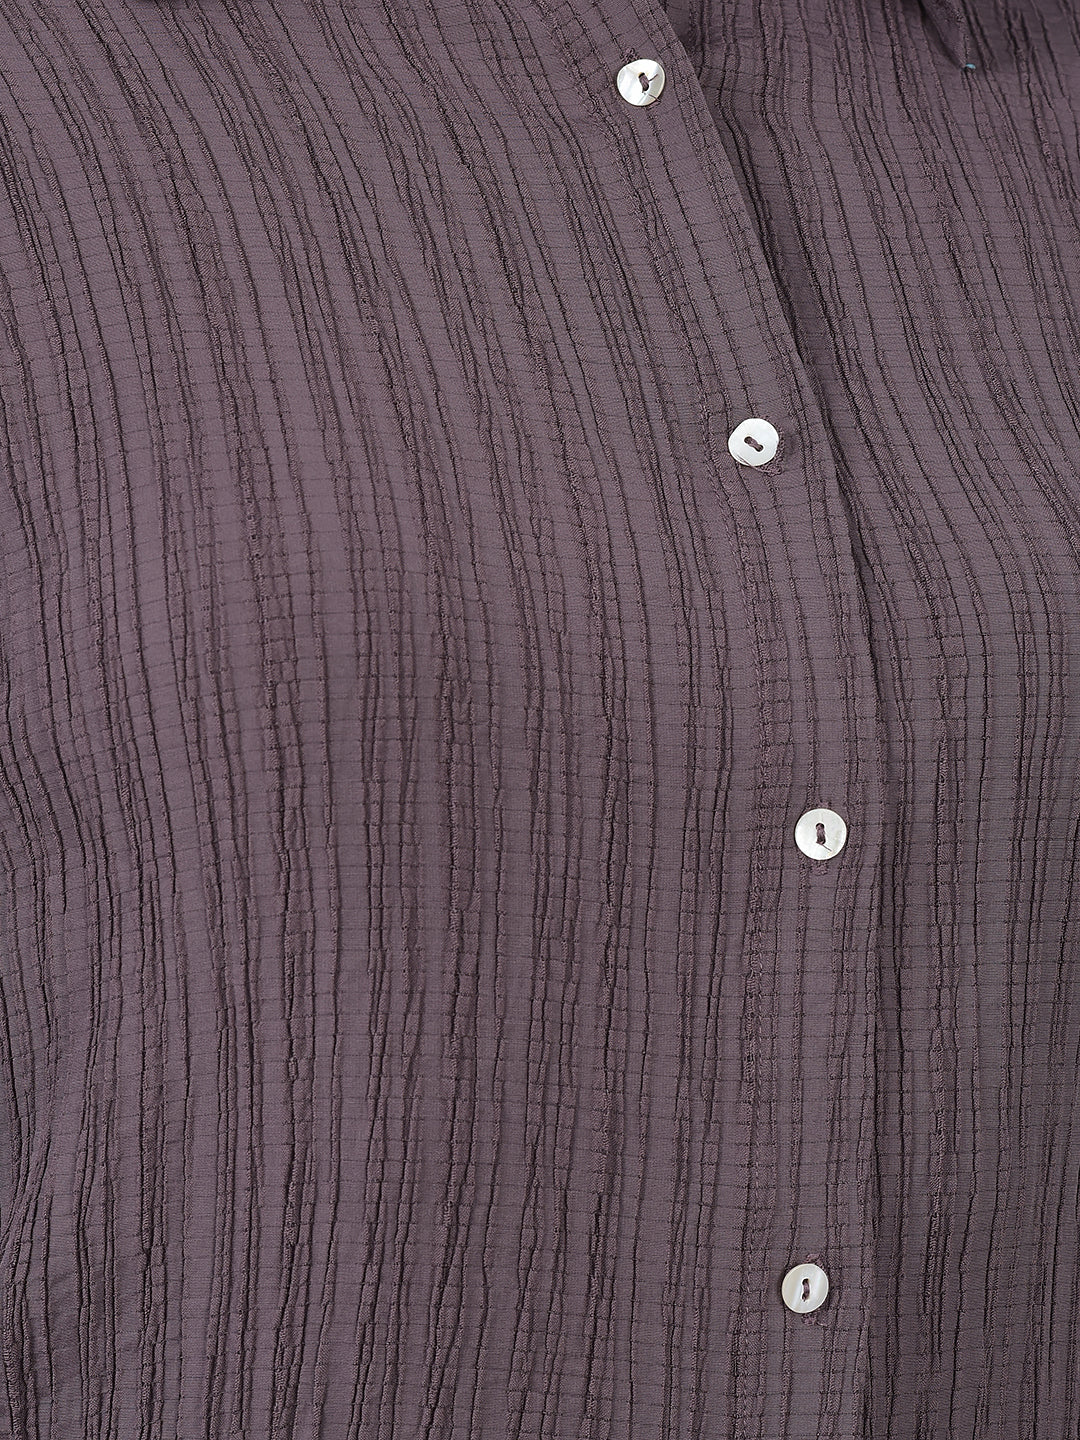 Copy of Canoe Women Shirt Collar Full Button Placket